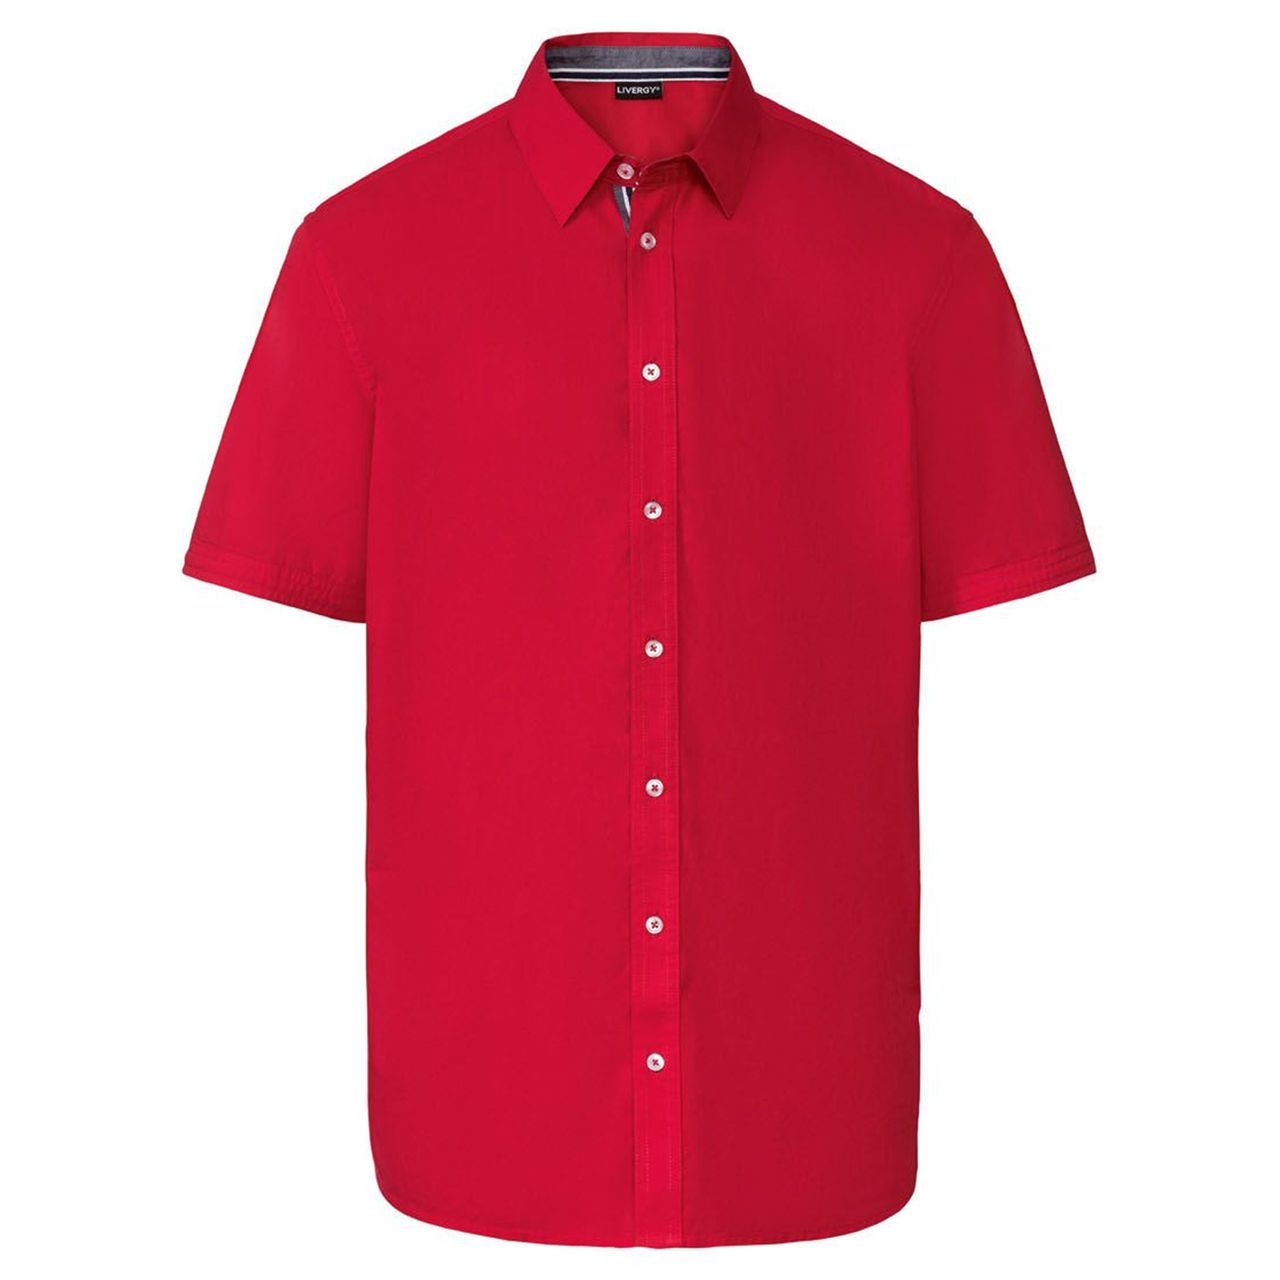 پیراهن آستین کوتاه مردانه لیورجی مدل RnewC رنگ قرمز